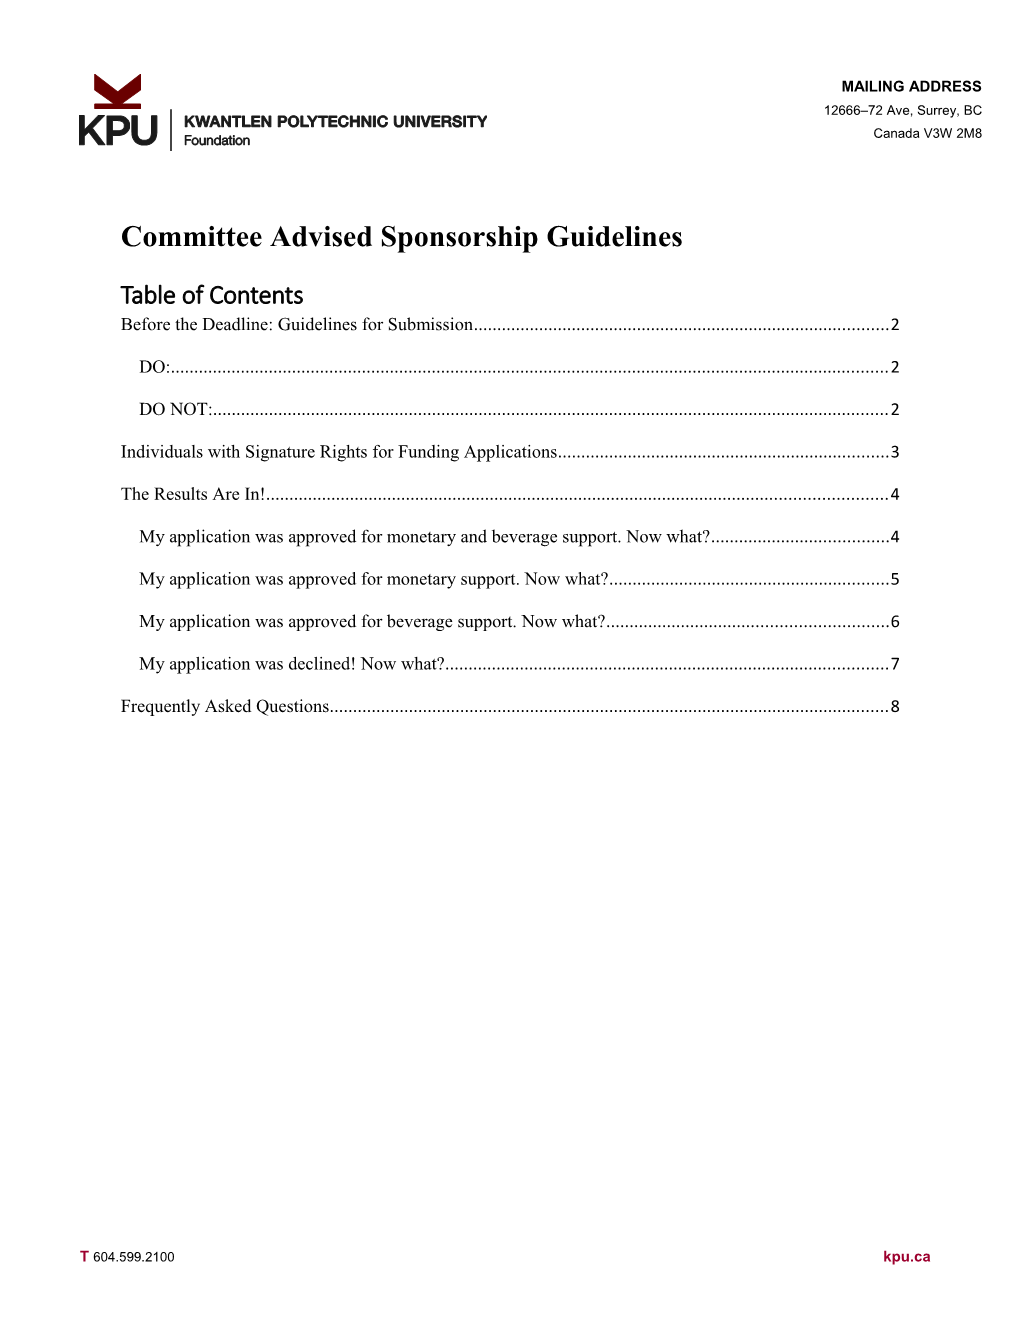 Committee Advised Sponsorship Guidelines